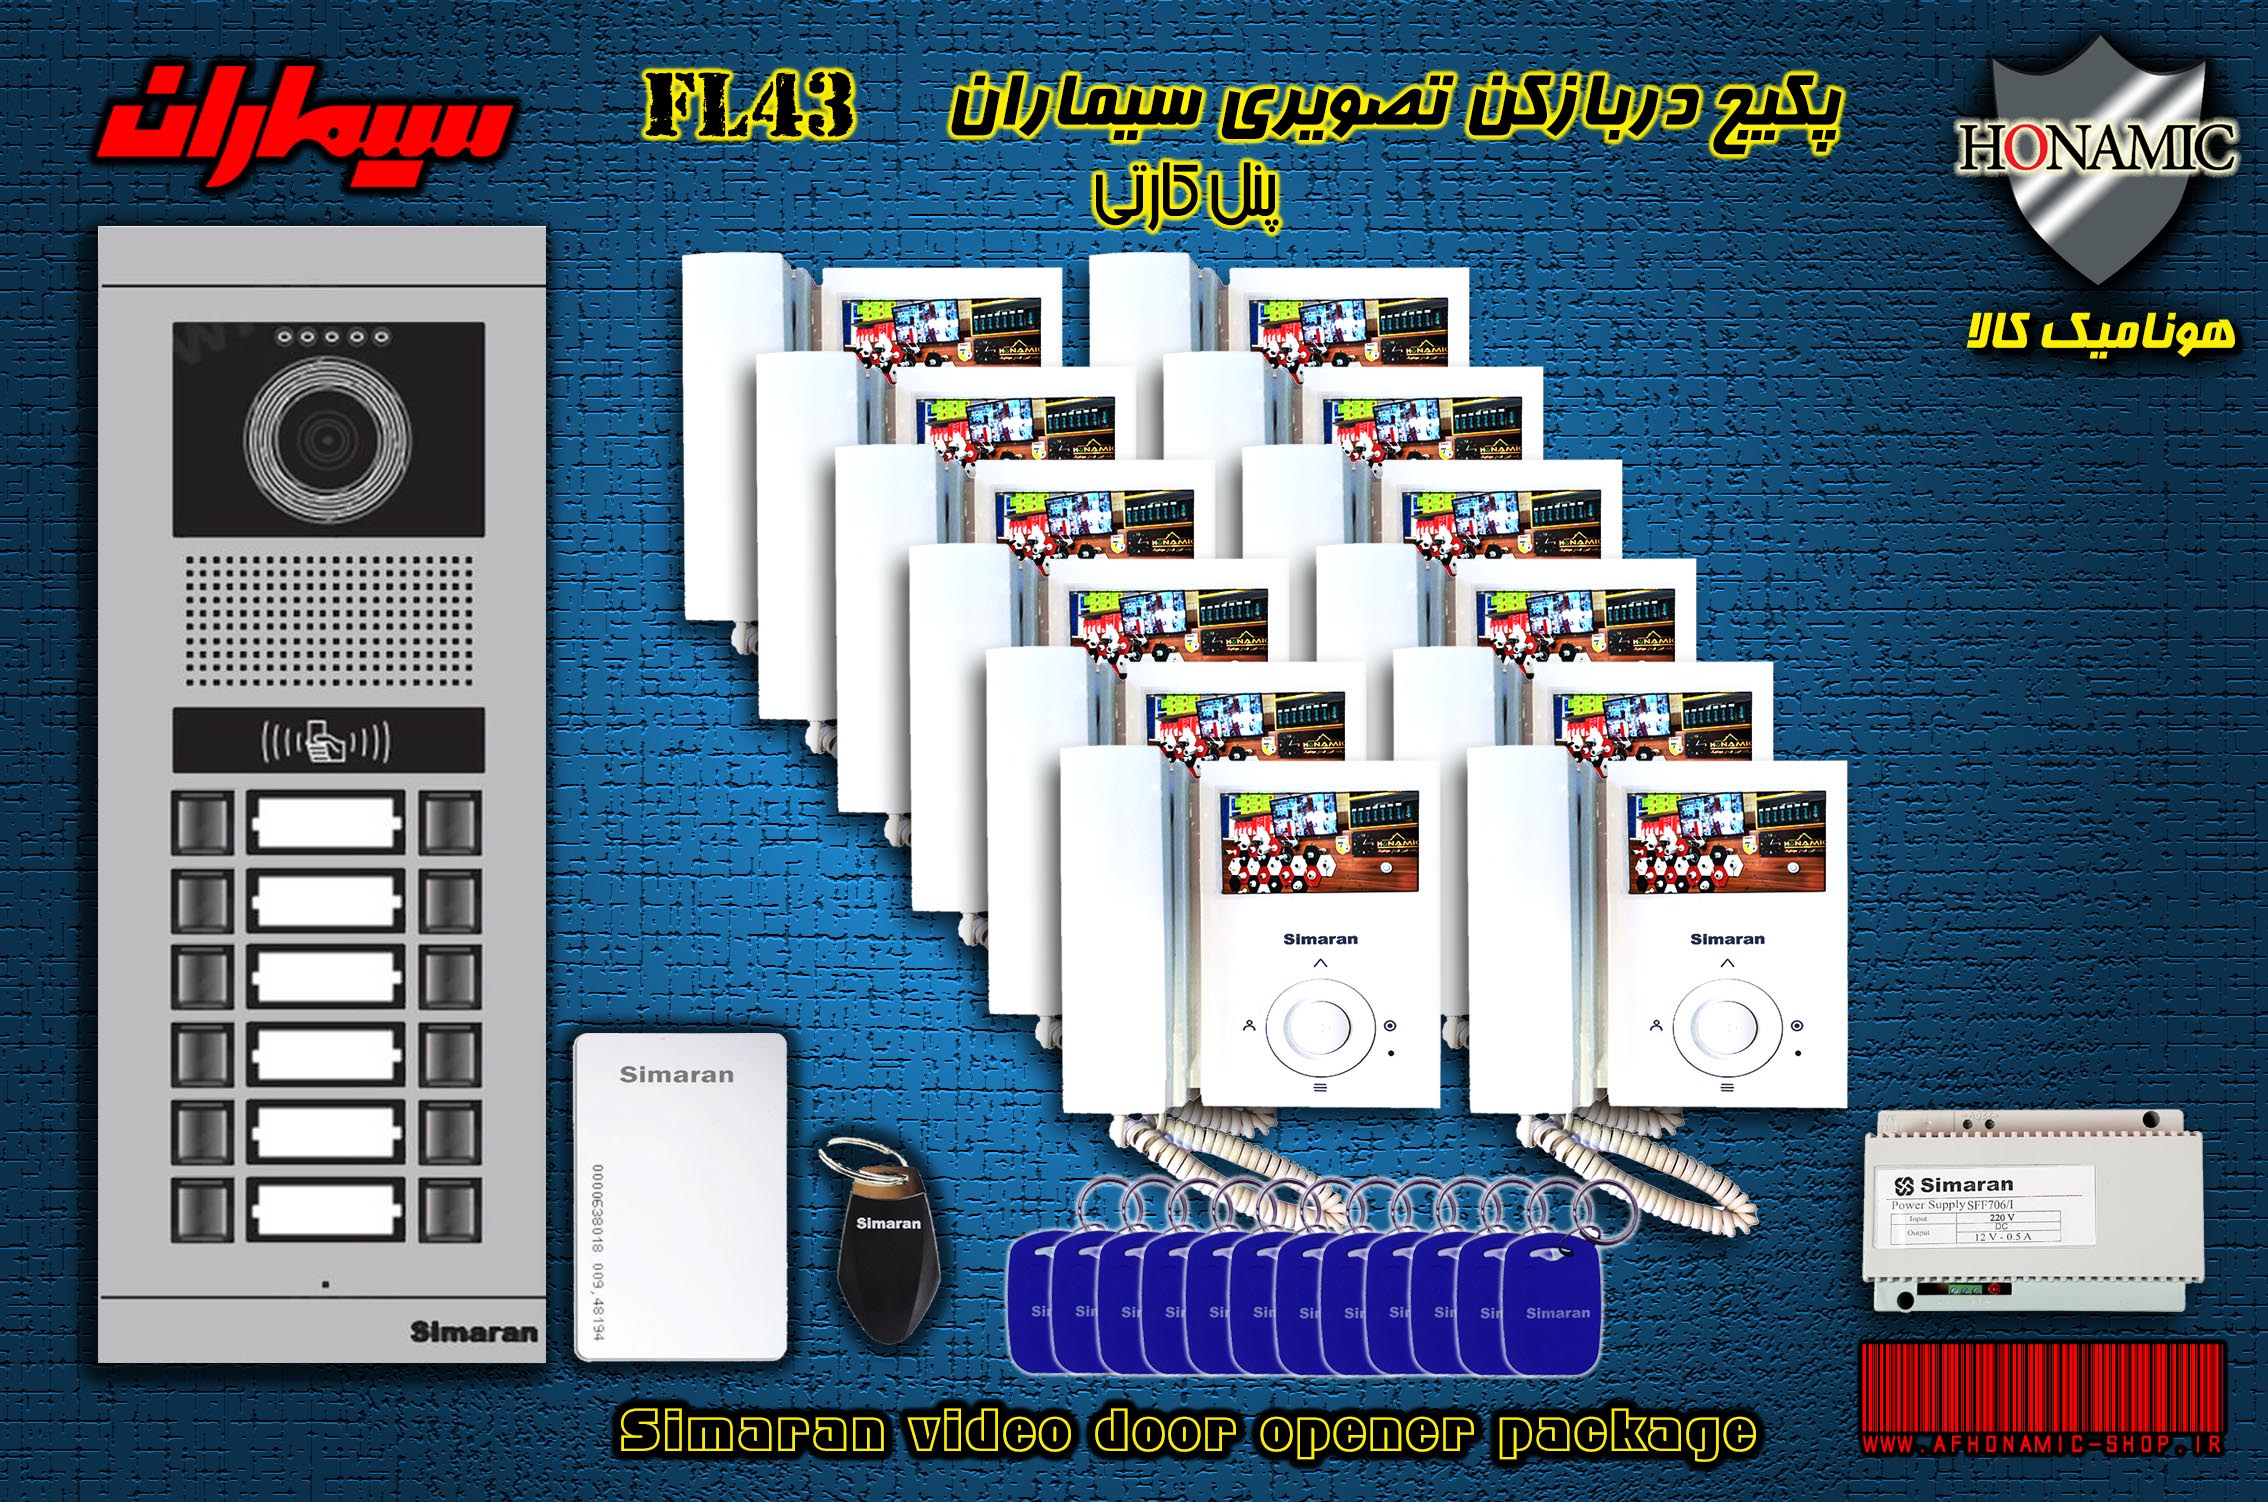 پکیج دوازده 12 واحدی آیفون تصویری دربازکن تصویری سیماران پنل کارتی با گوشی 43-FL,43FL2